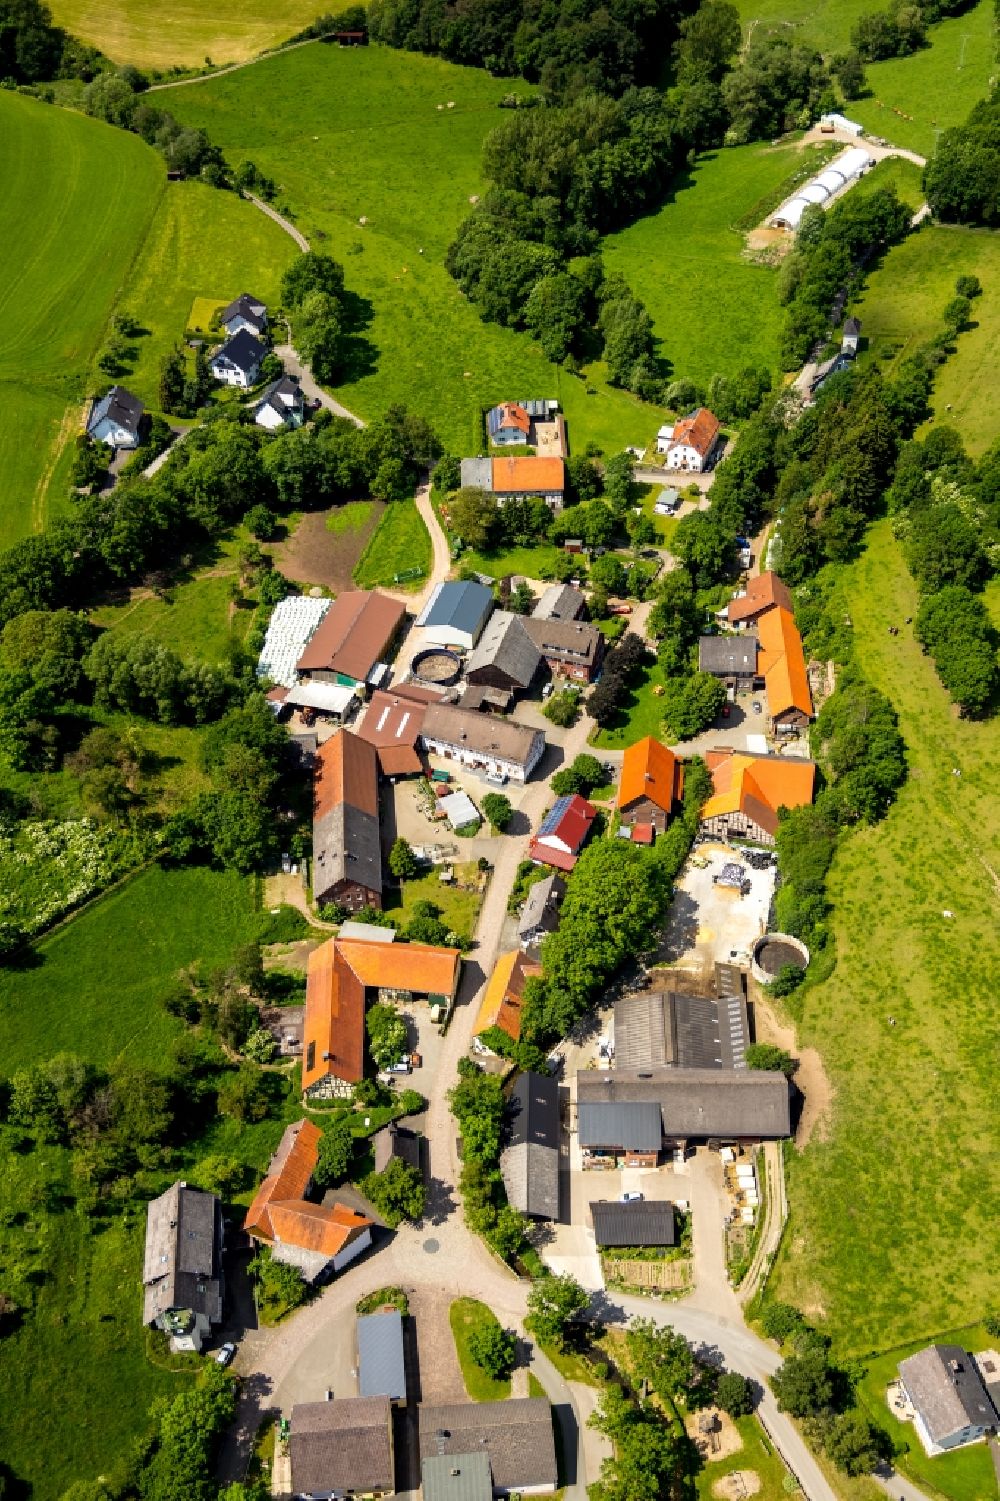 Hemmighausen aus der Vogelperspektive: Dorf - Ansicht in Hemmighausen im Bundesland Hessen, Deutschland